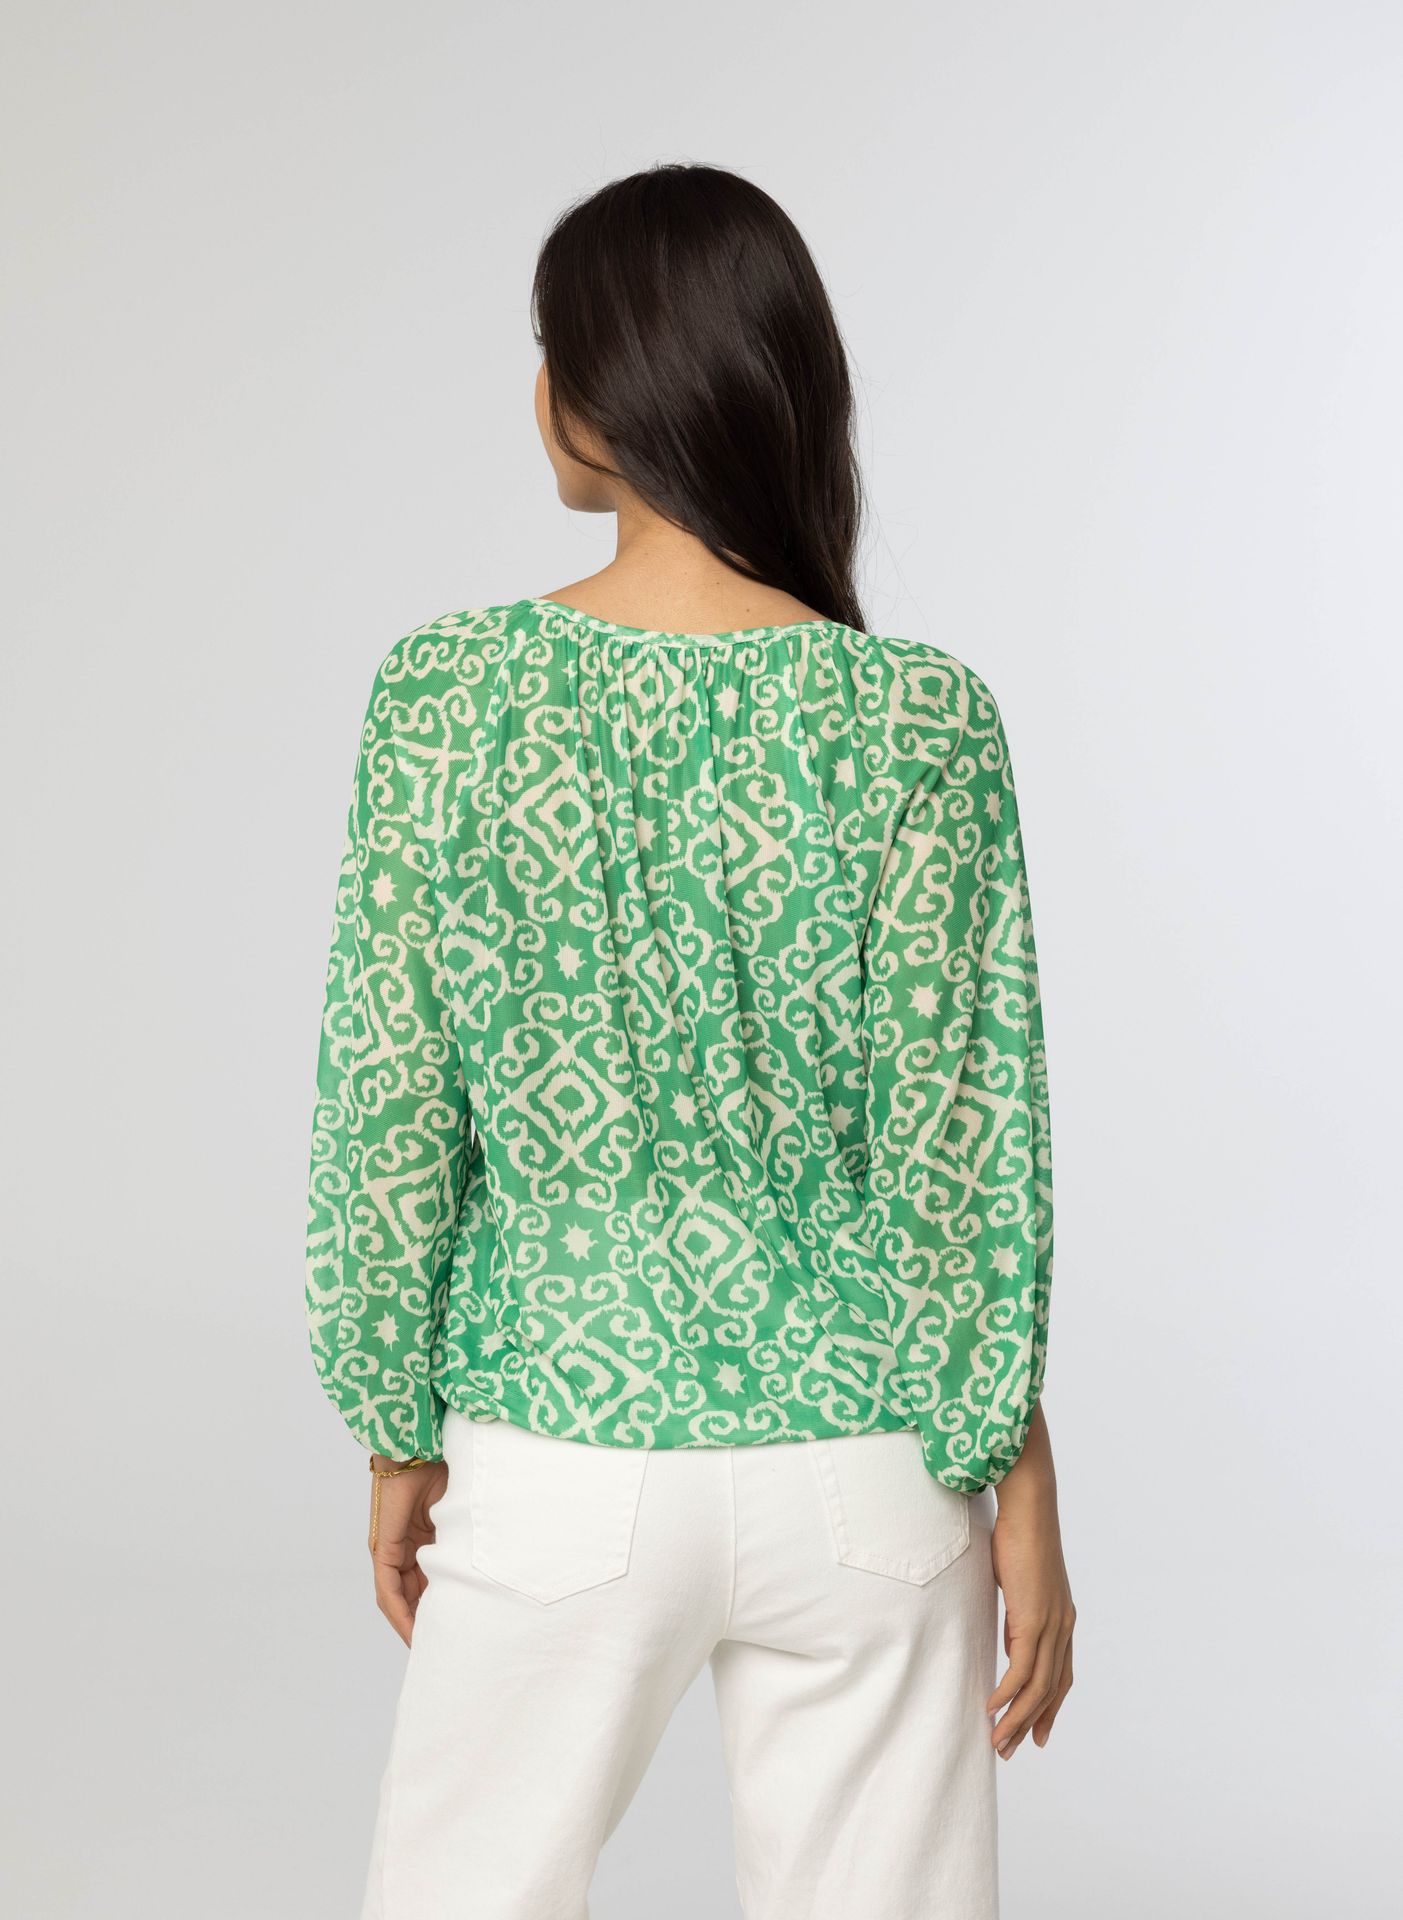 Norah Groen shirt green/ecru 214076-541